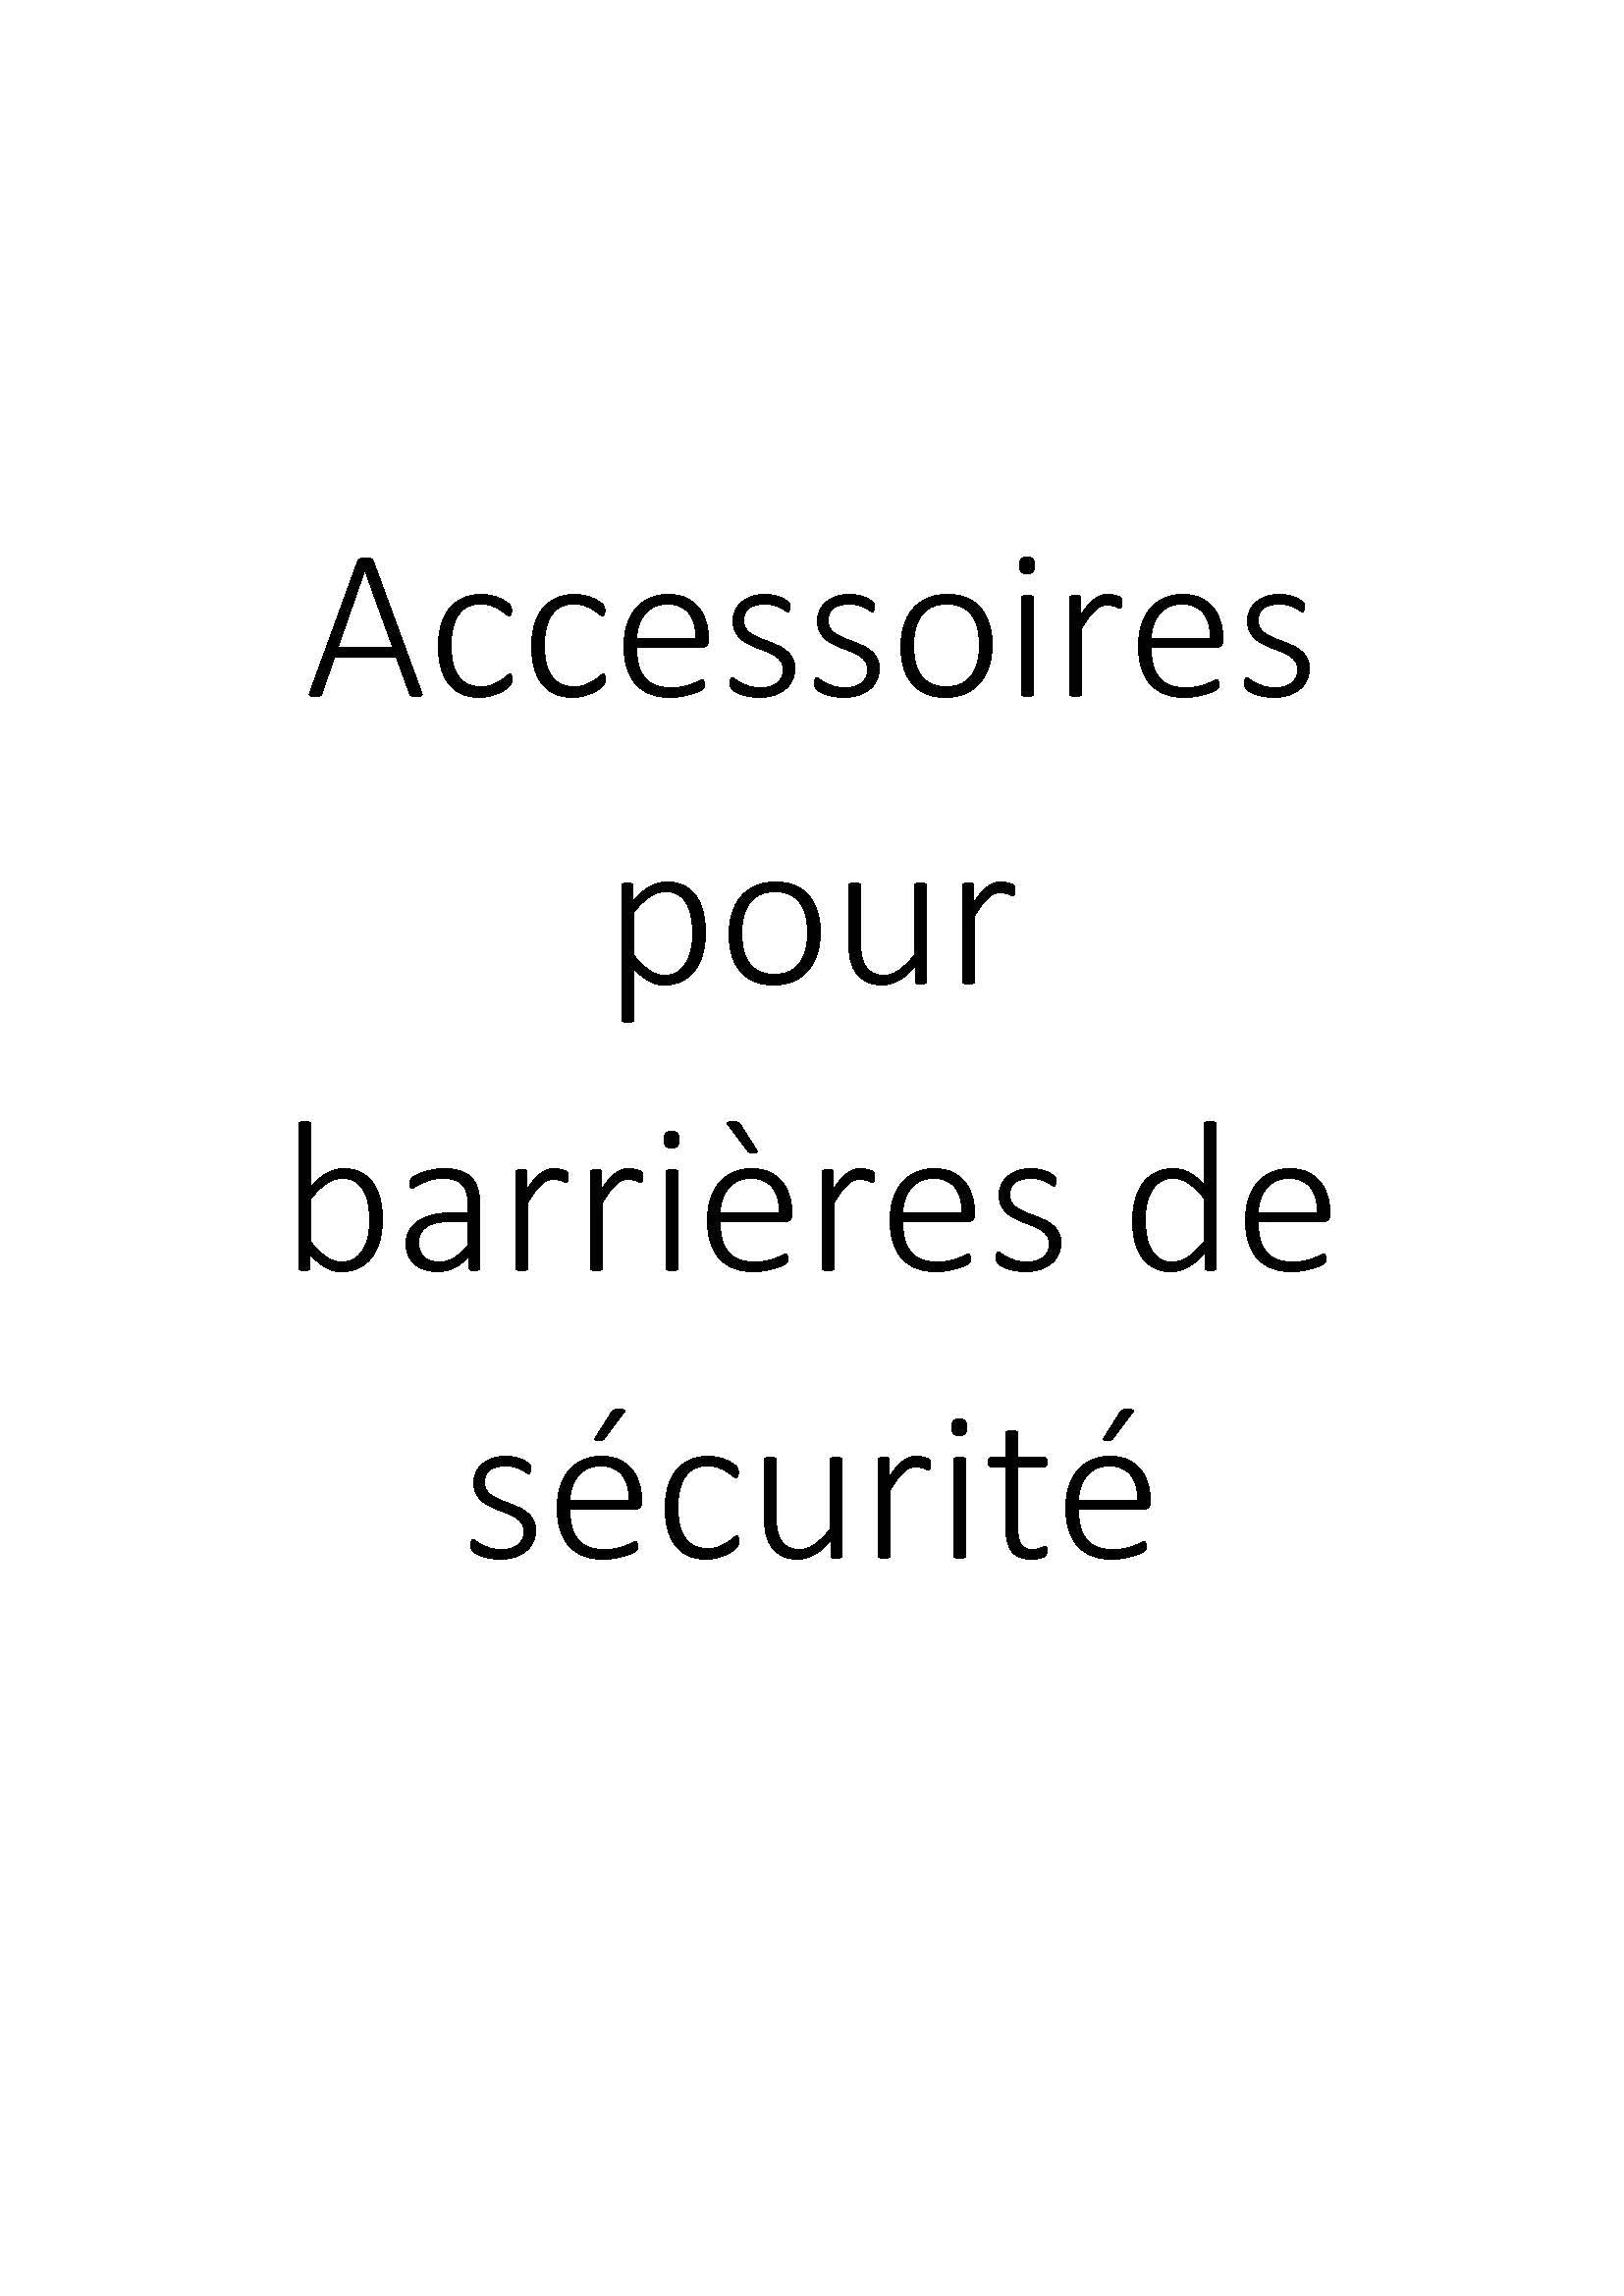 Accessoires pour barrières de sécurité clicktofournisseur.com